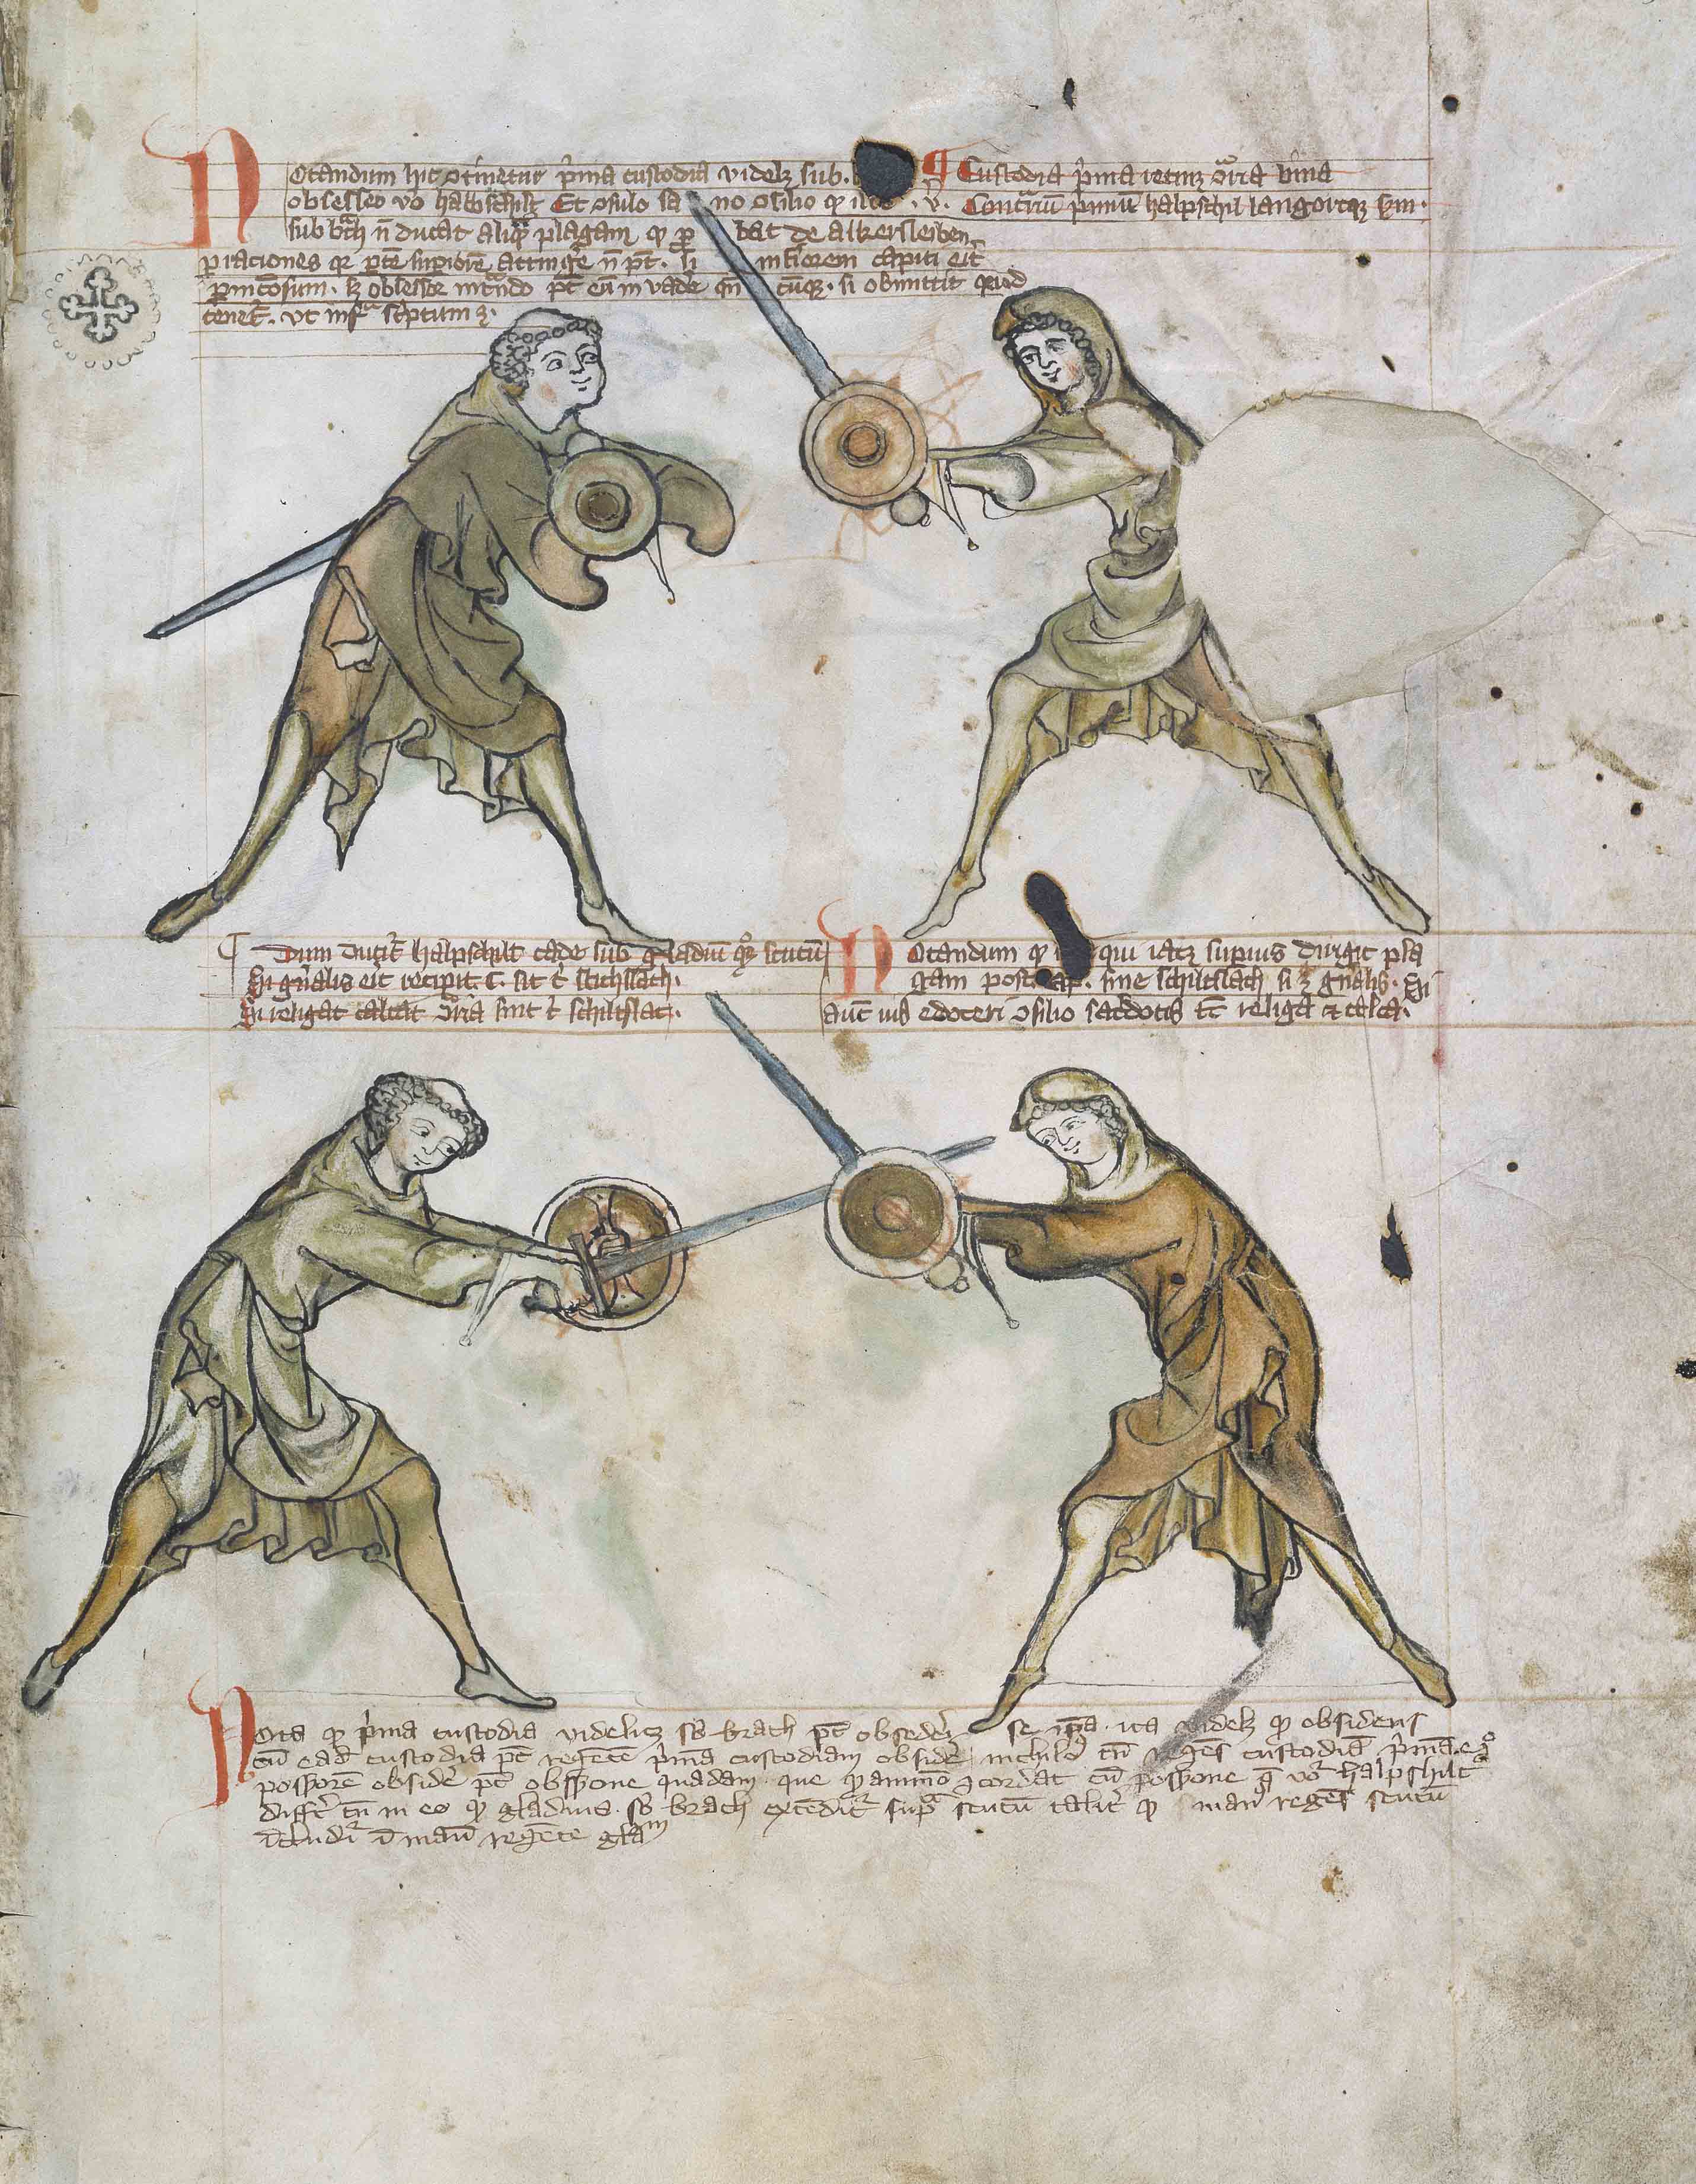 目前欧洲已知最早传世的剑术典籍《I.33》